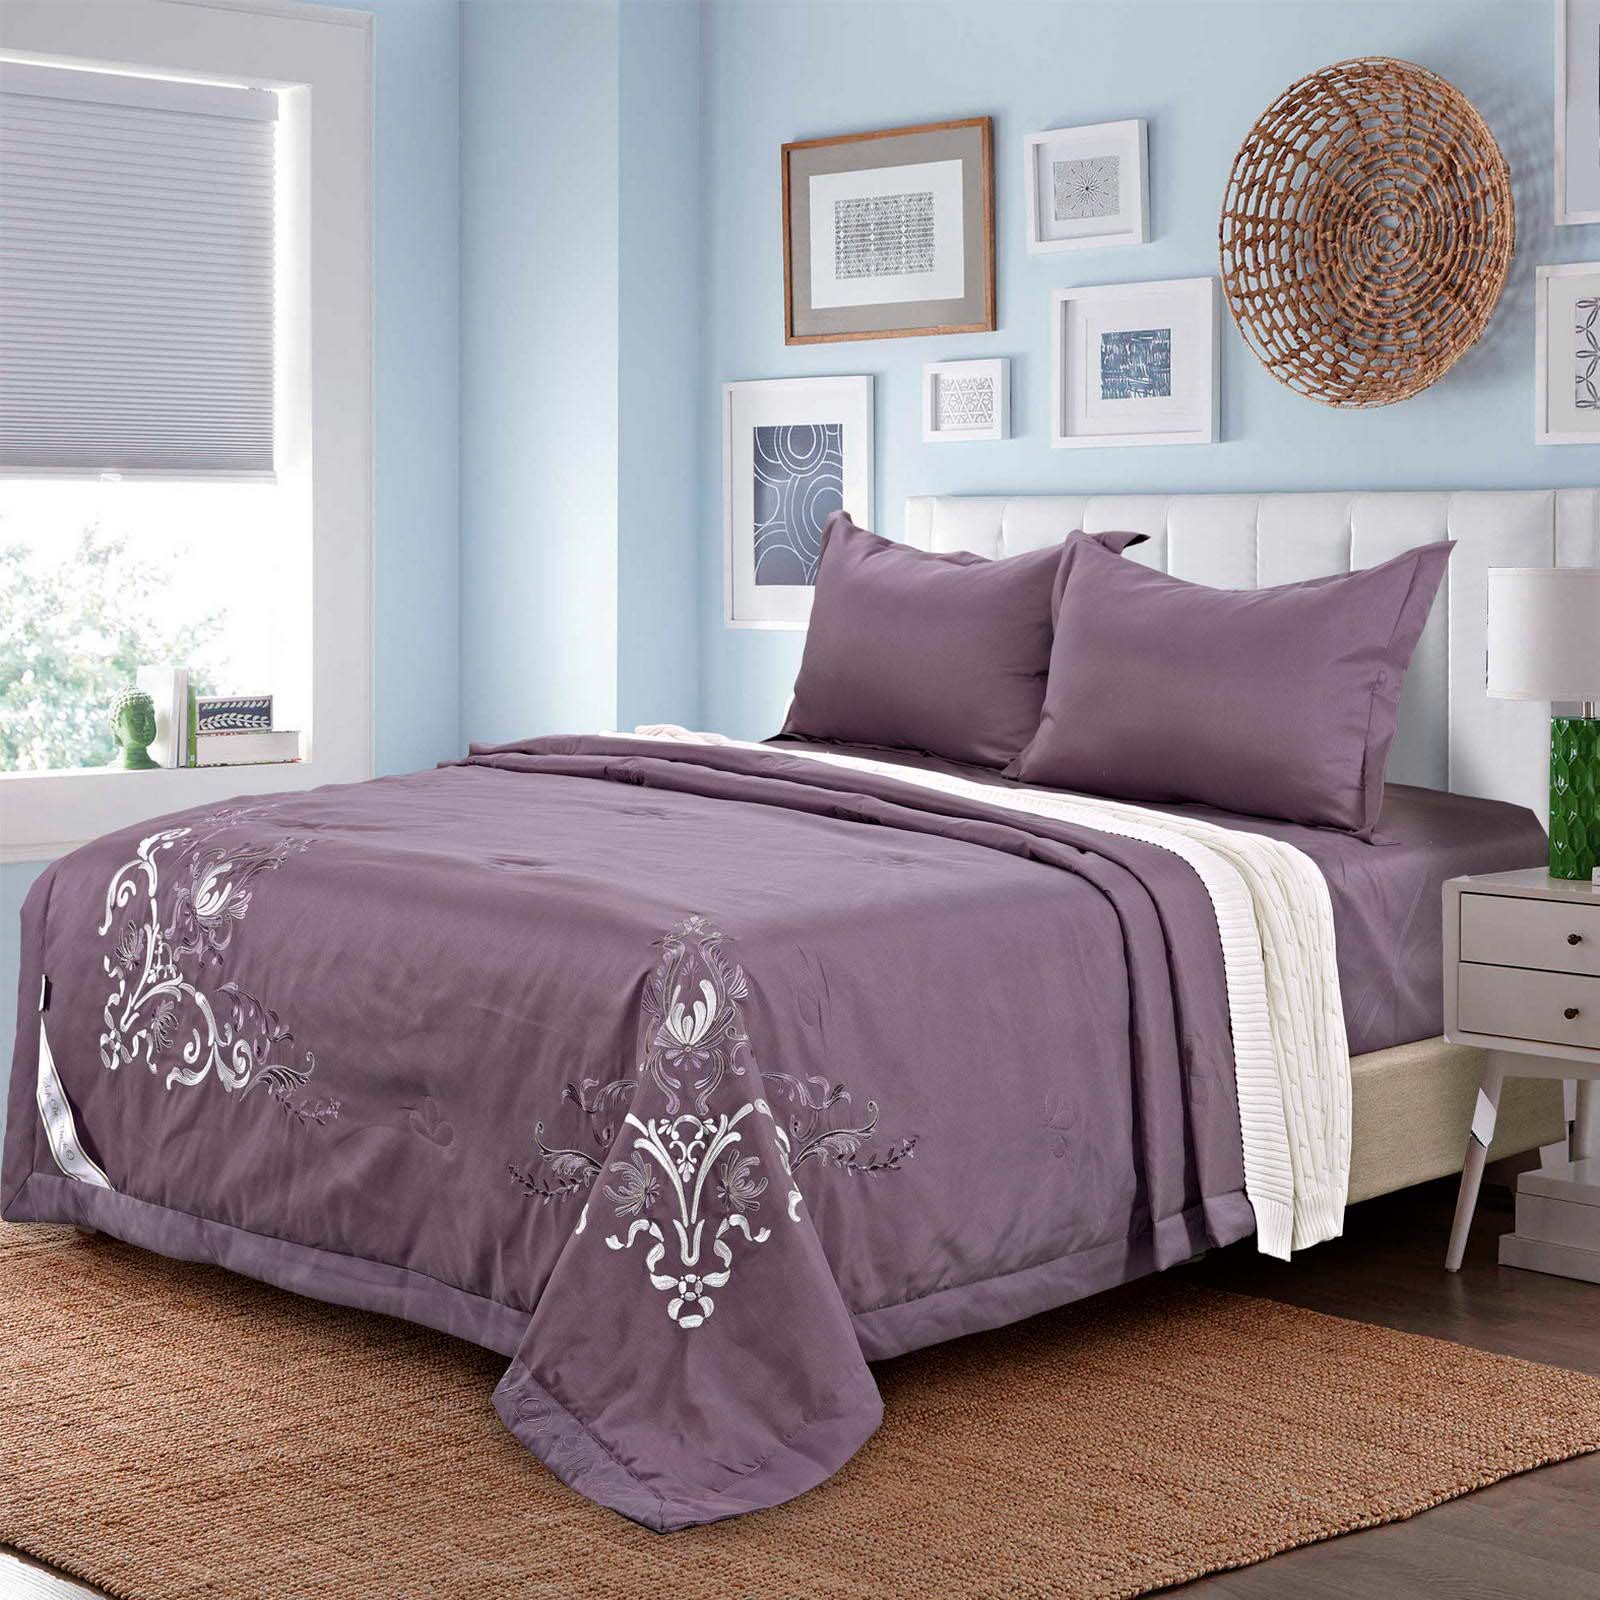 Постельное белье с одеялом Изида цвет: фиолетовый (семейное (2 одеяла-покрывала))